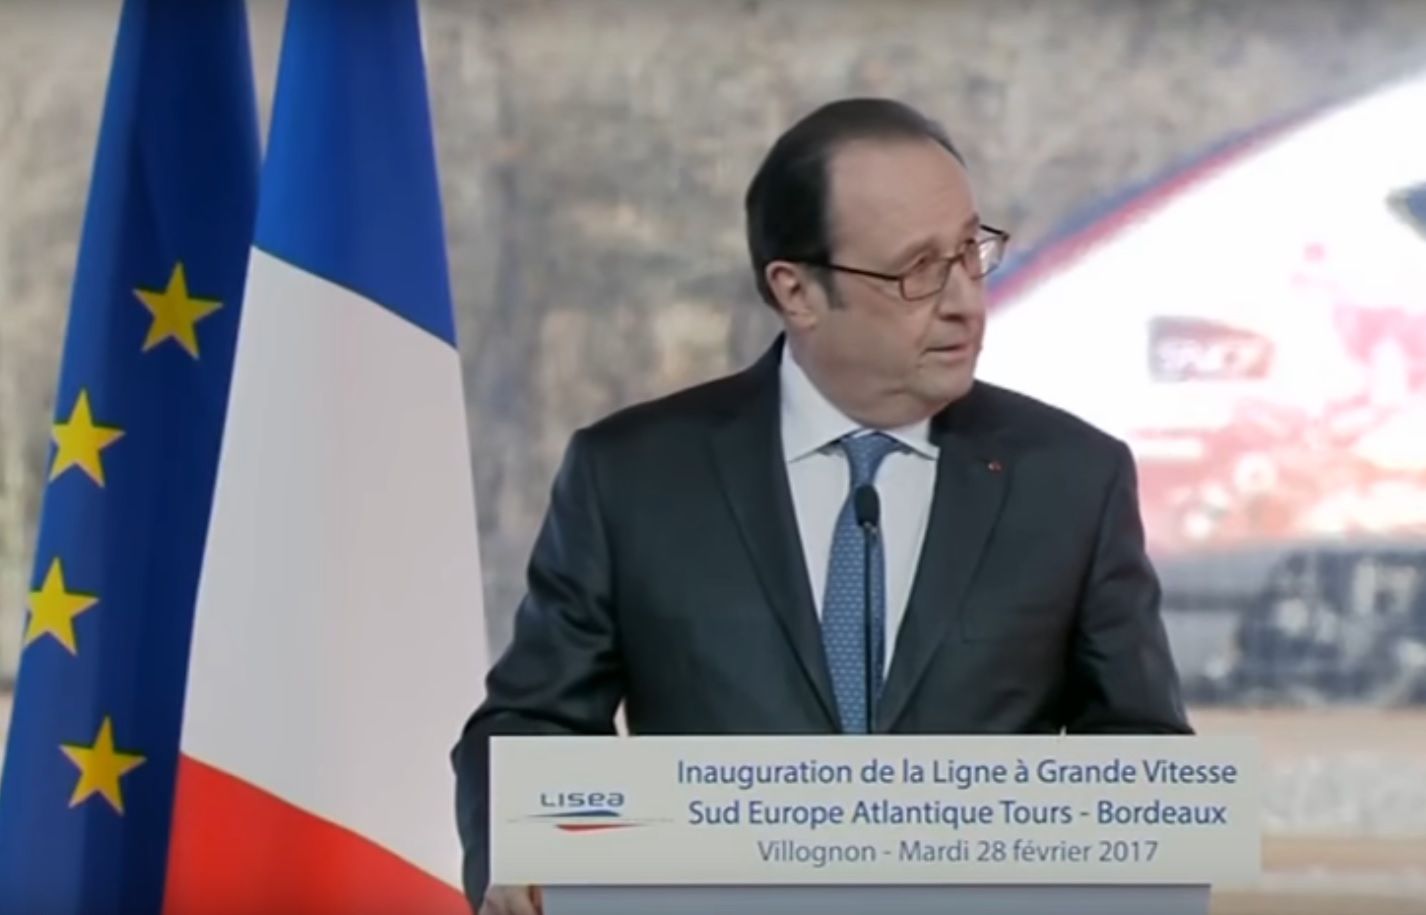 Padły strzały, kiedy mówił prezydent Francji